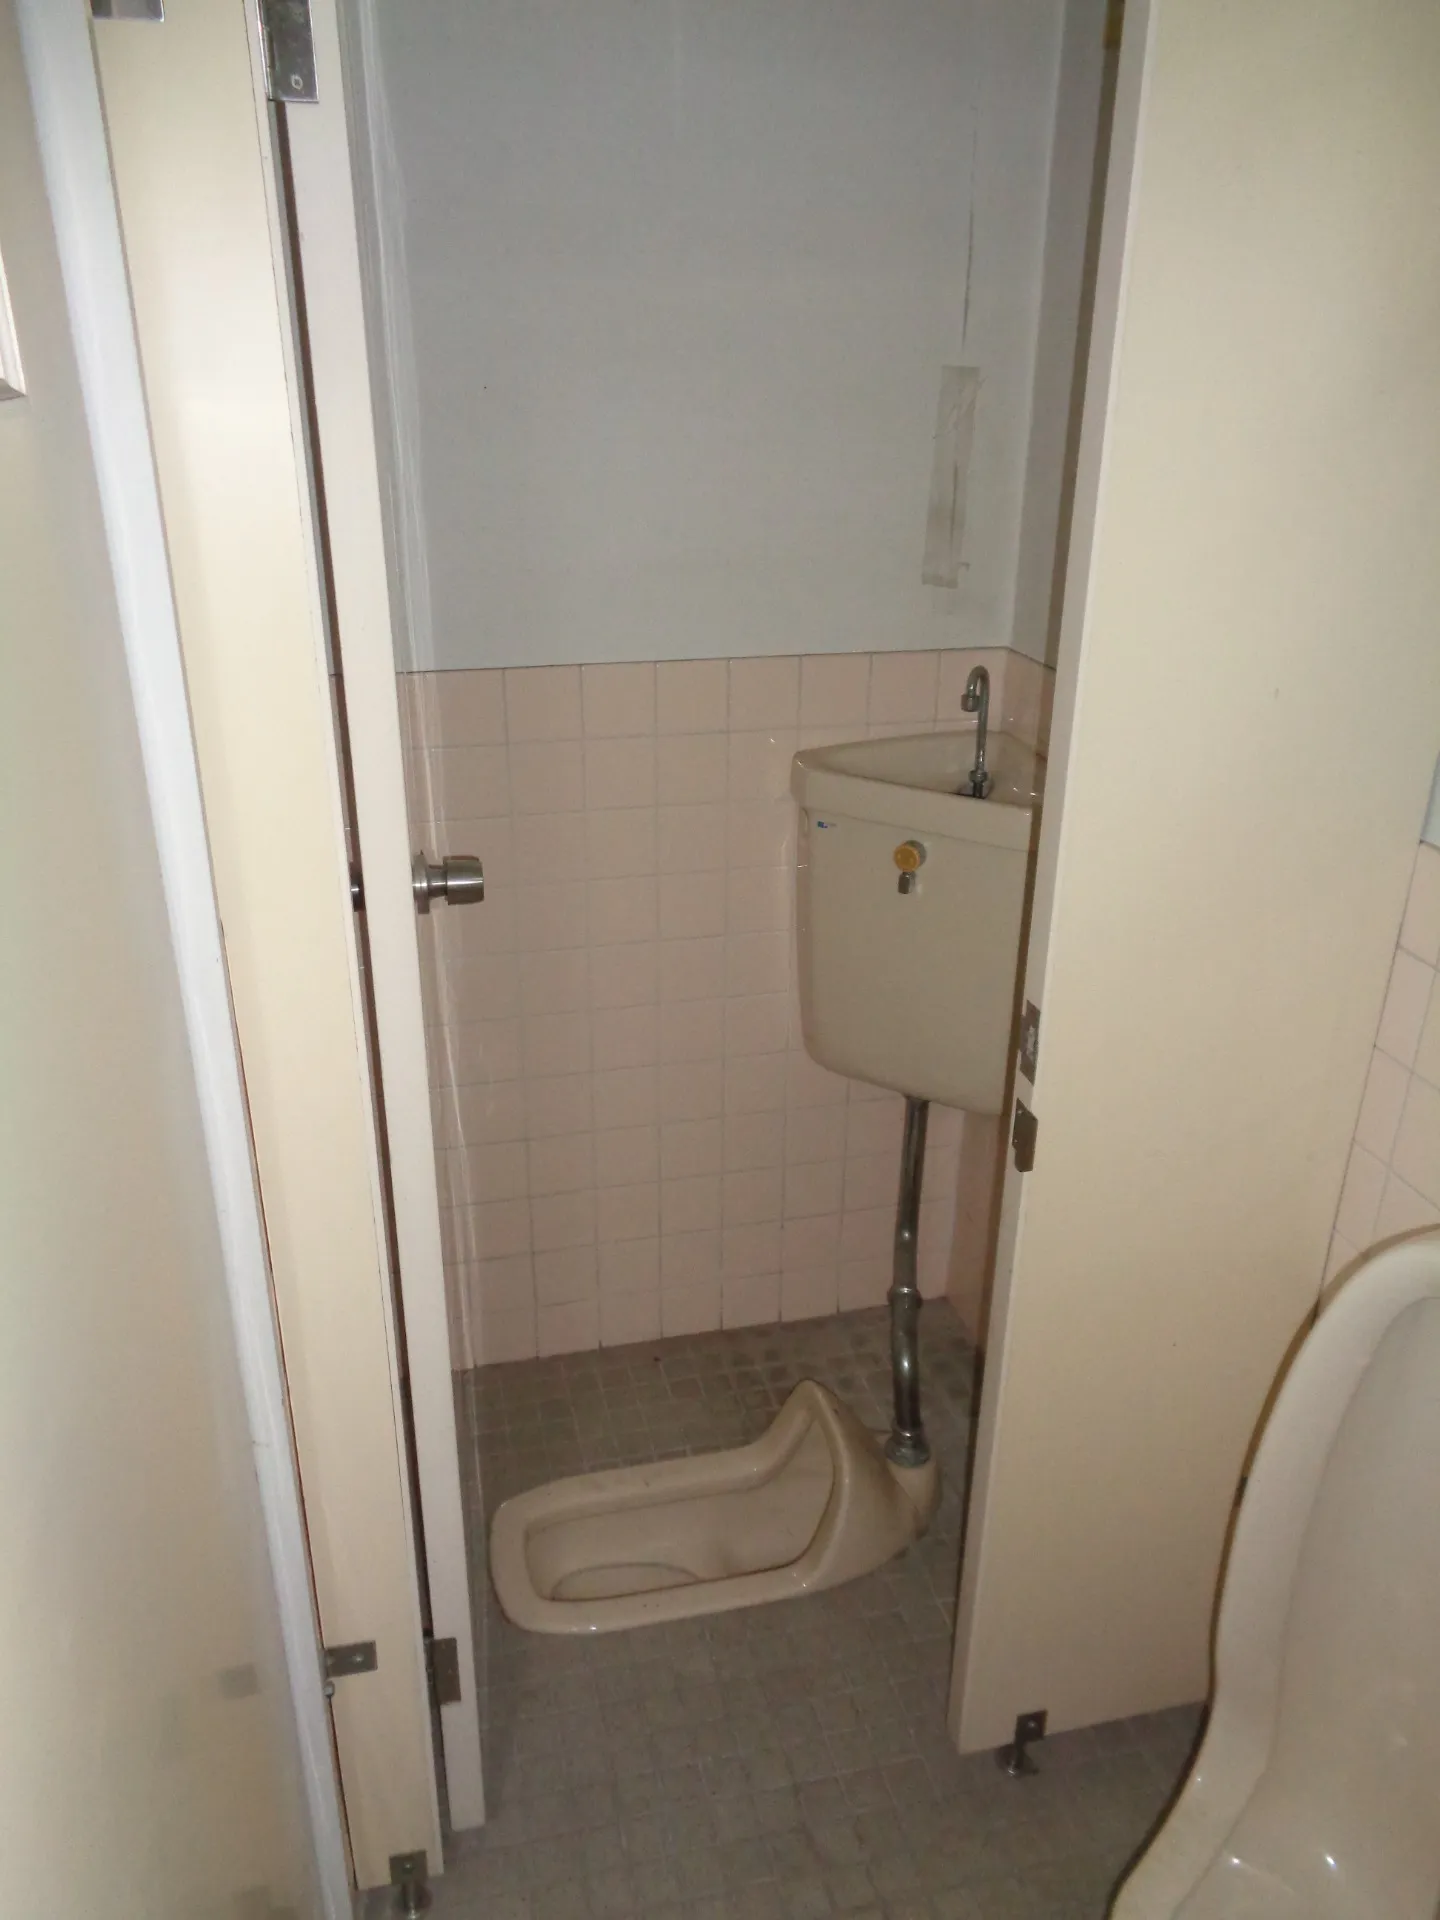 【名古屋市】トイレの改修工事